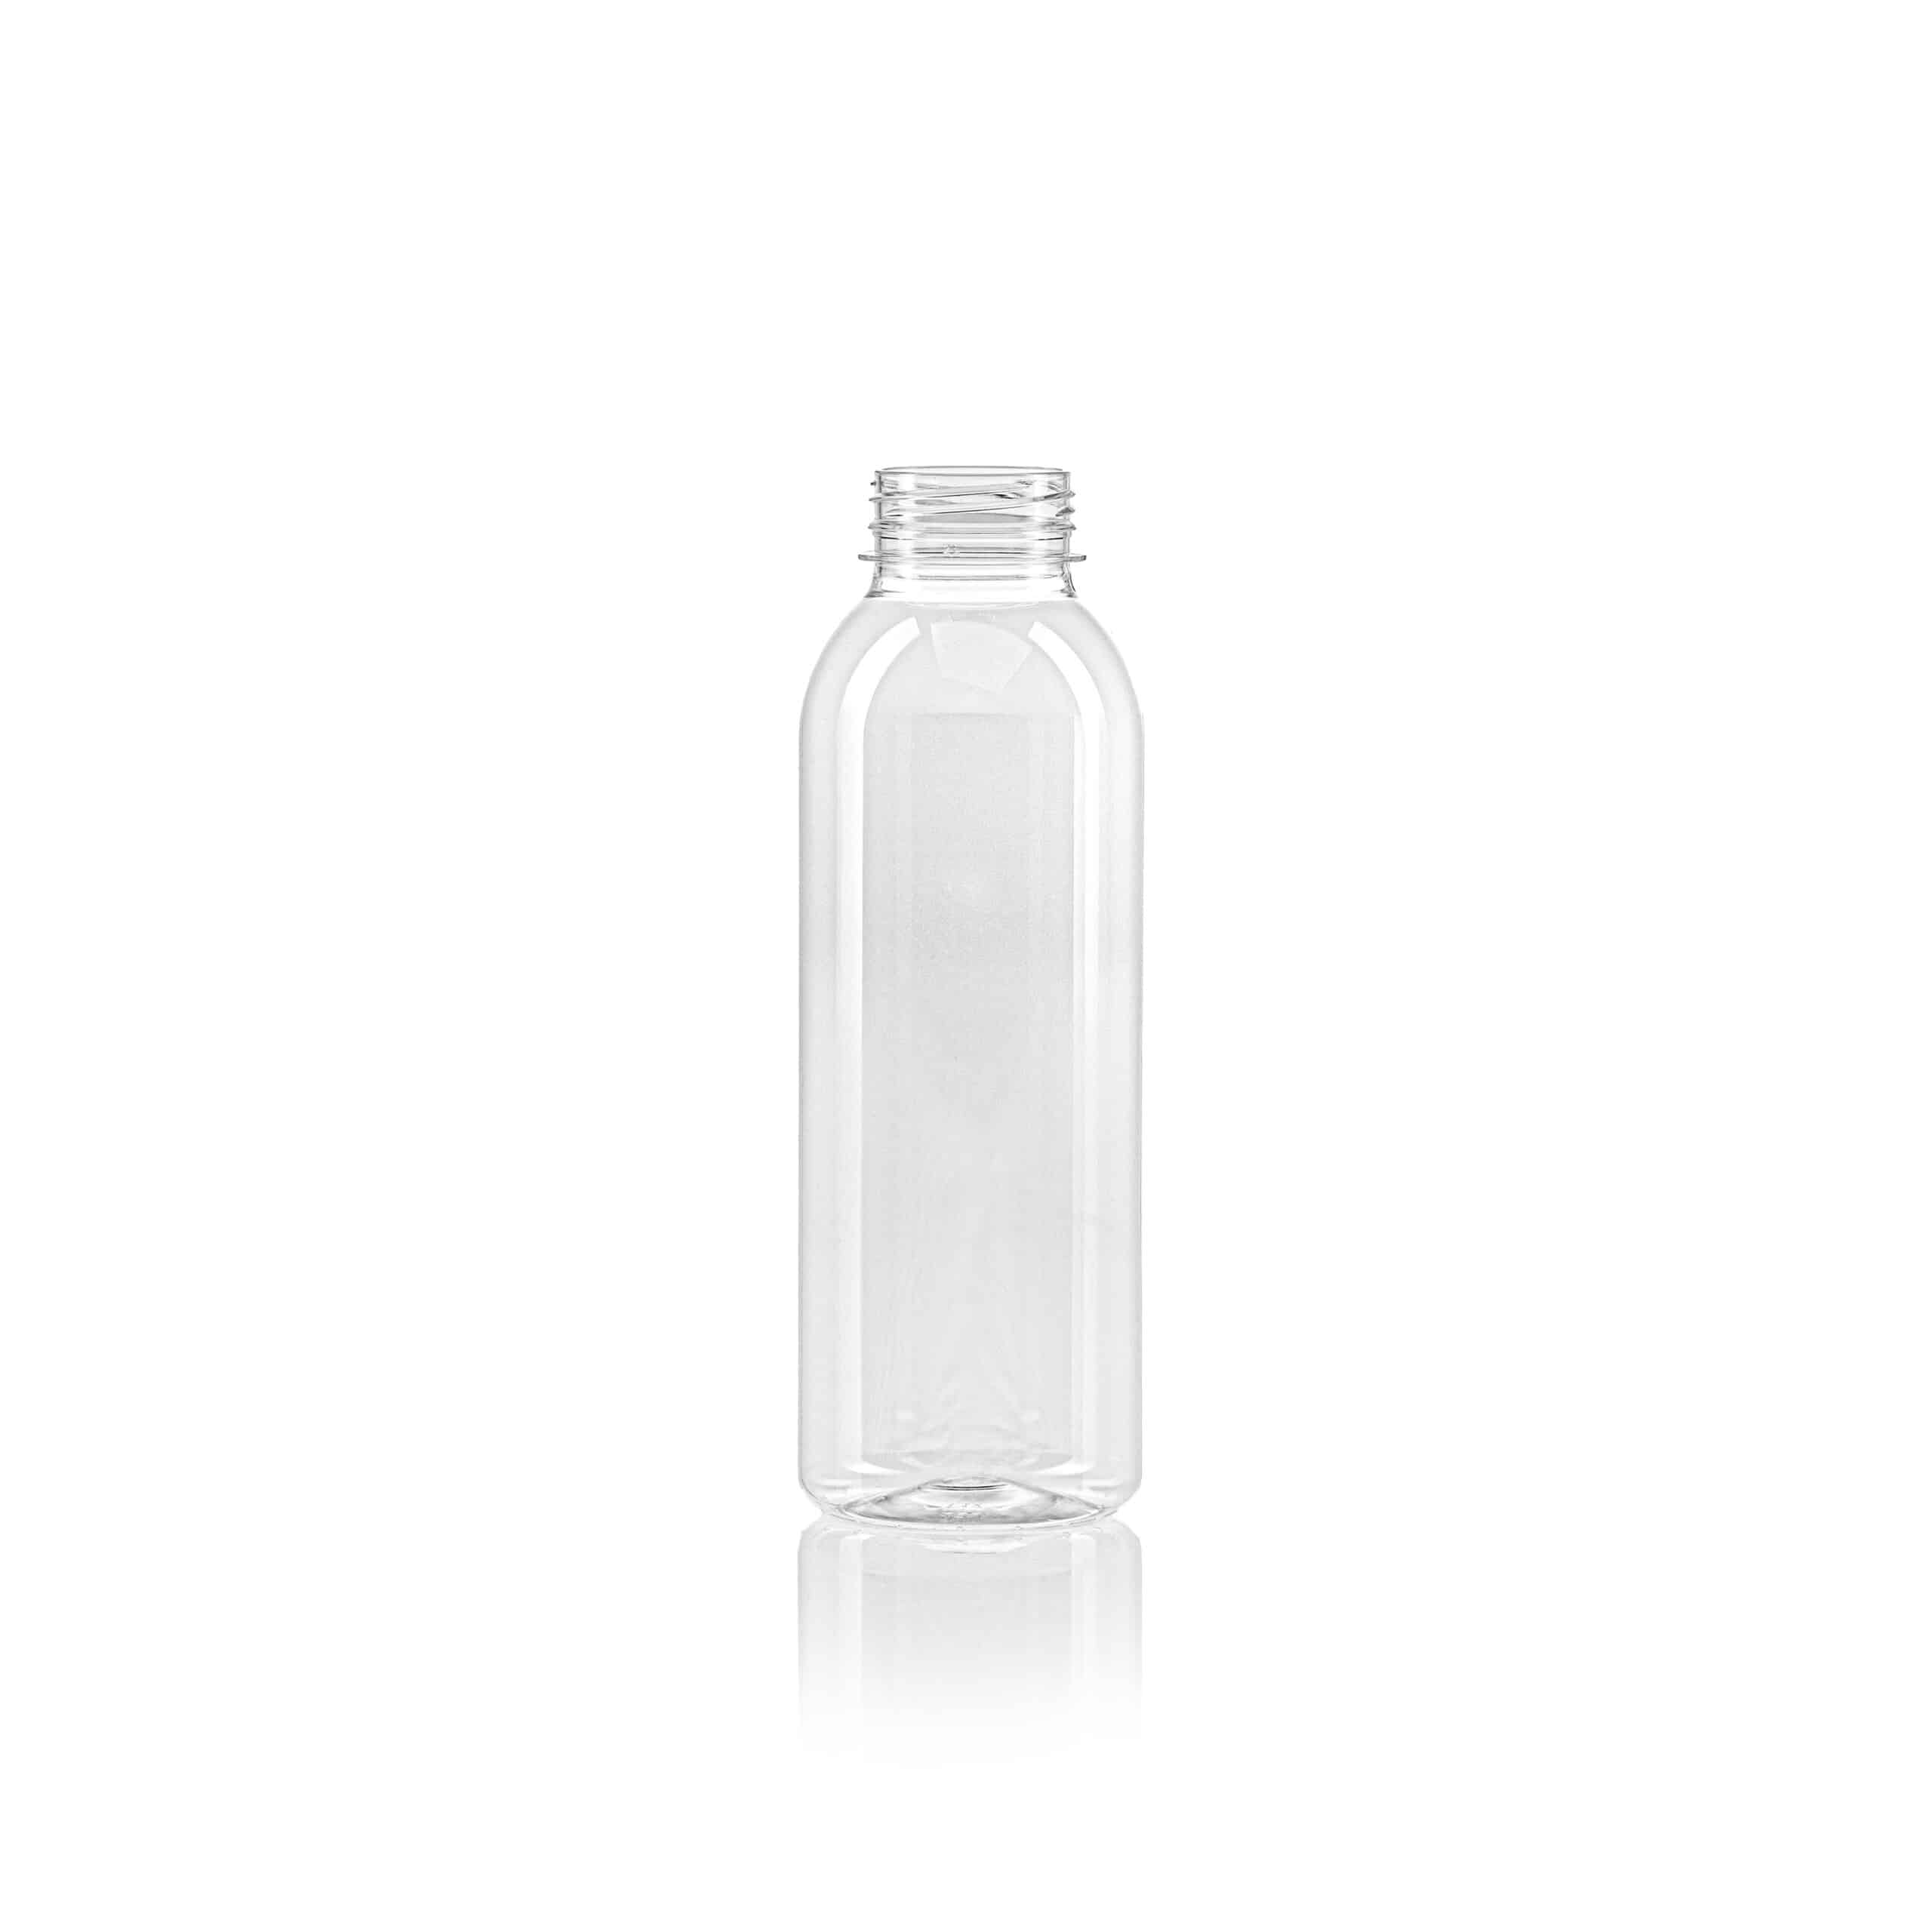 PET juice bottle round 500ml scaled